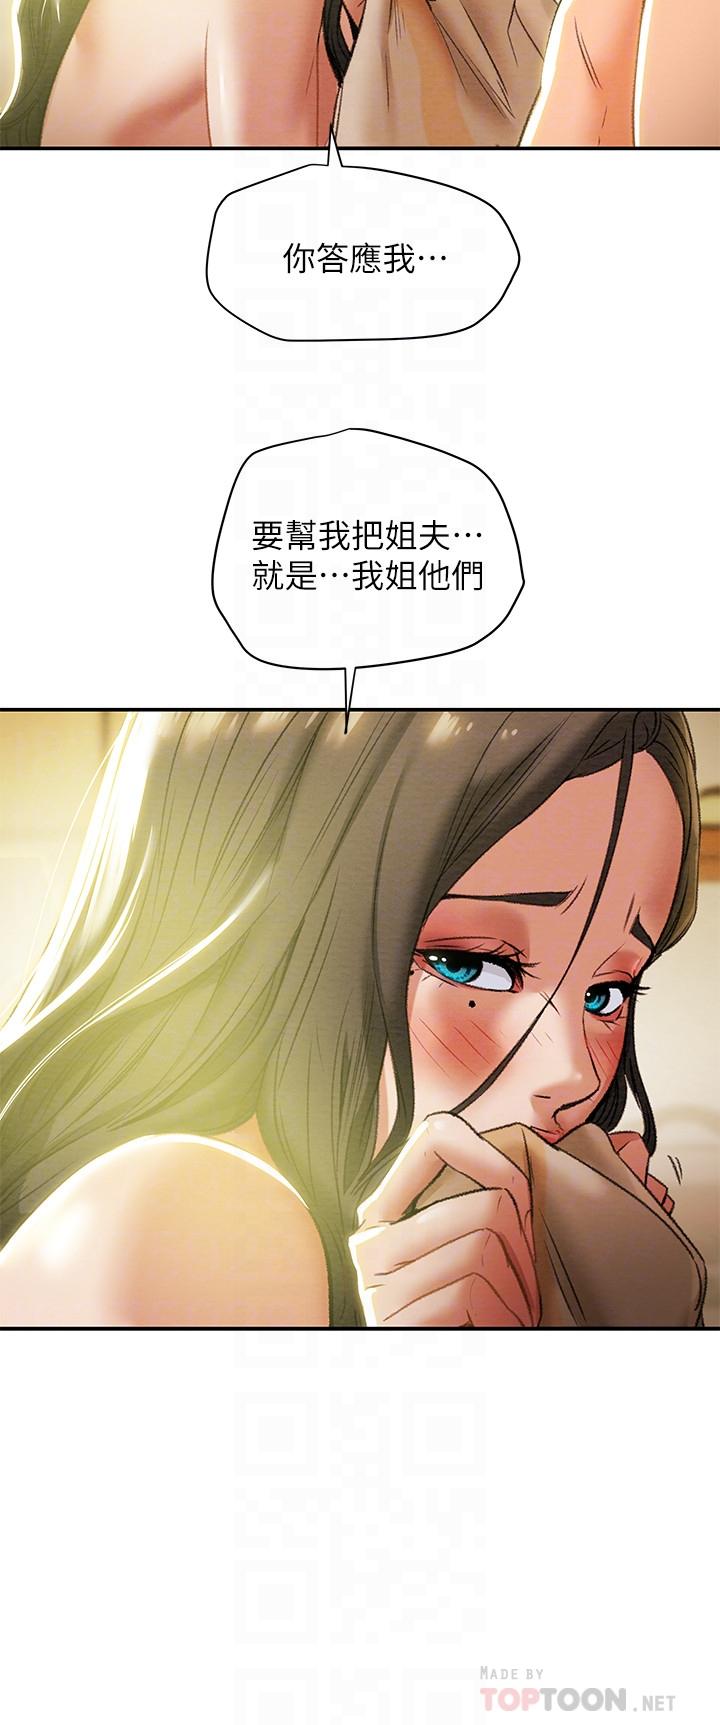 韩国污漫画 純情女攻略計劃 第16话-脱一半的OL最诱人 16